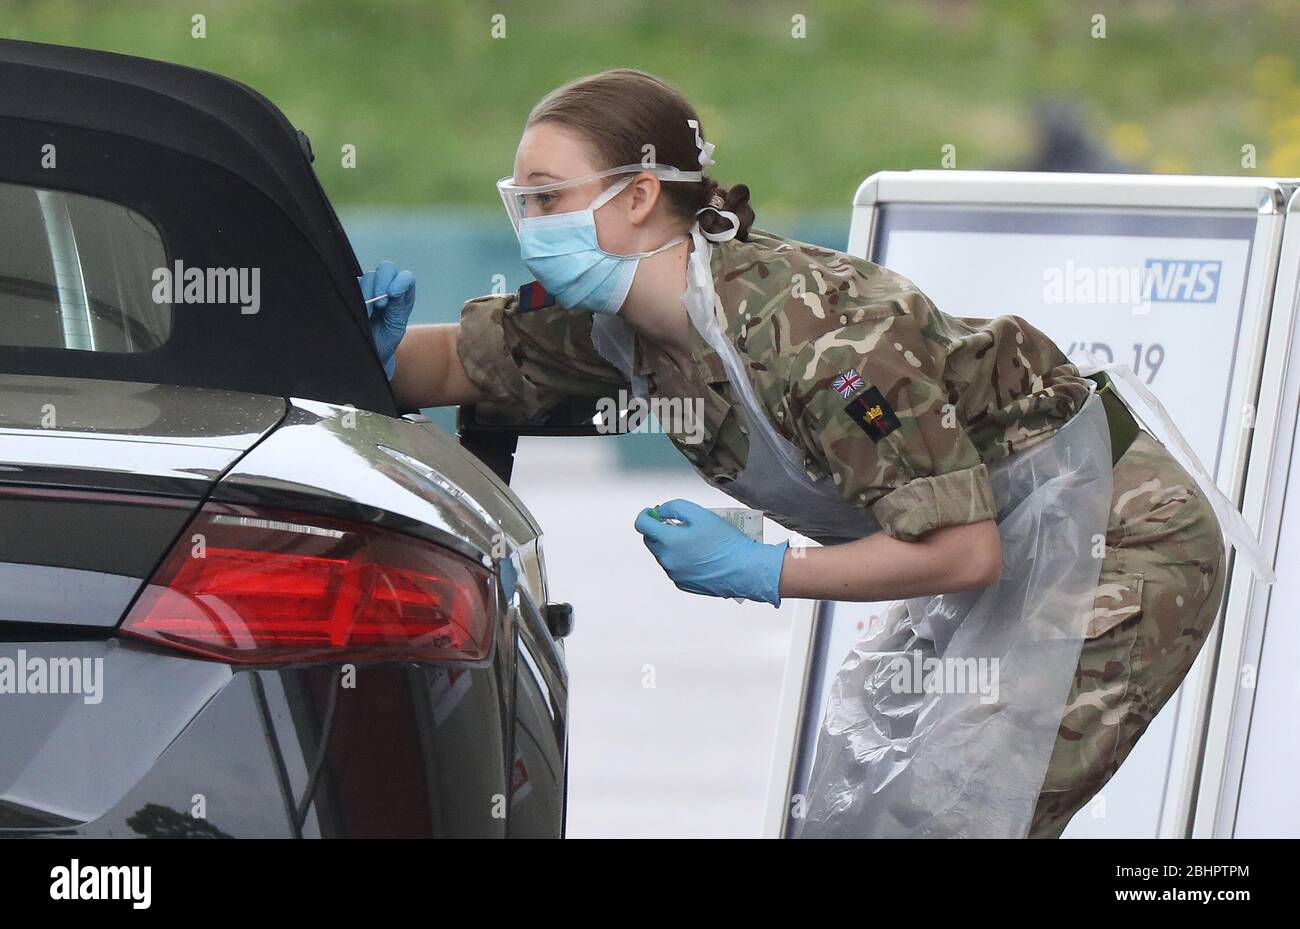 Chessington, Regno Unito. 27 aprile 2020. Il personale militare prova il personale dell'NHS presso un veicolo per coronavirus dell'NHS attraverso l'impianto di test a Chessington, a sud-ovest di Londra. Credit: James Boardman/Alamy Live News Foto Stock